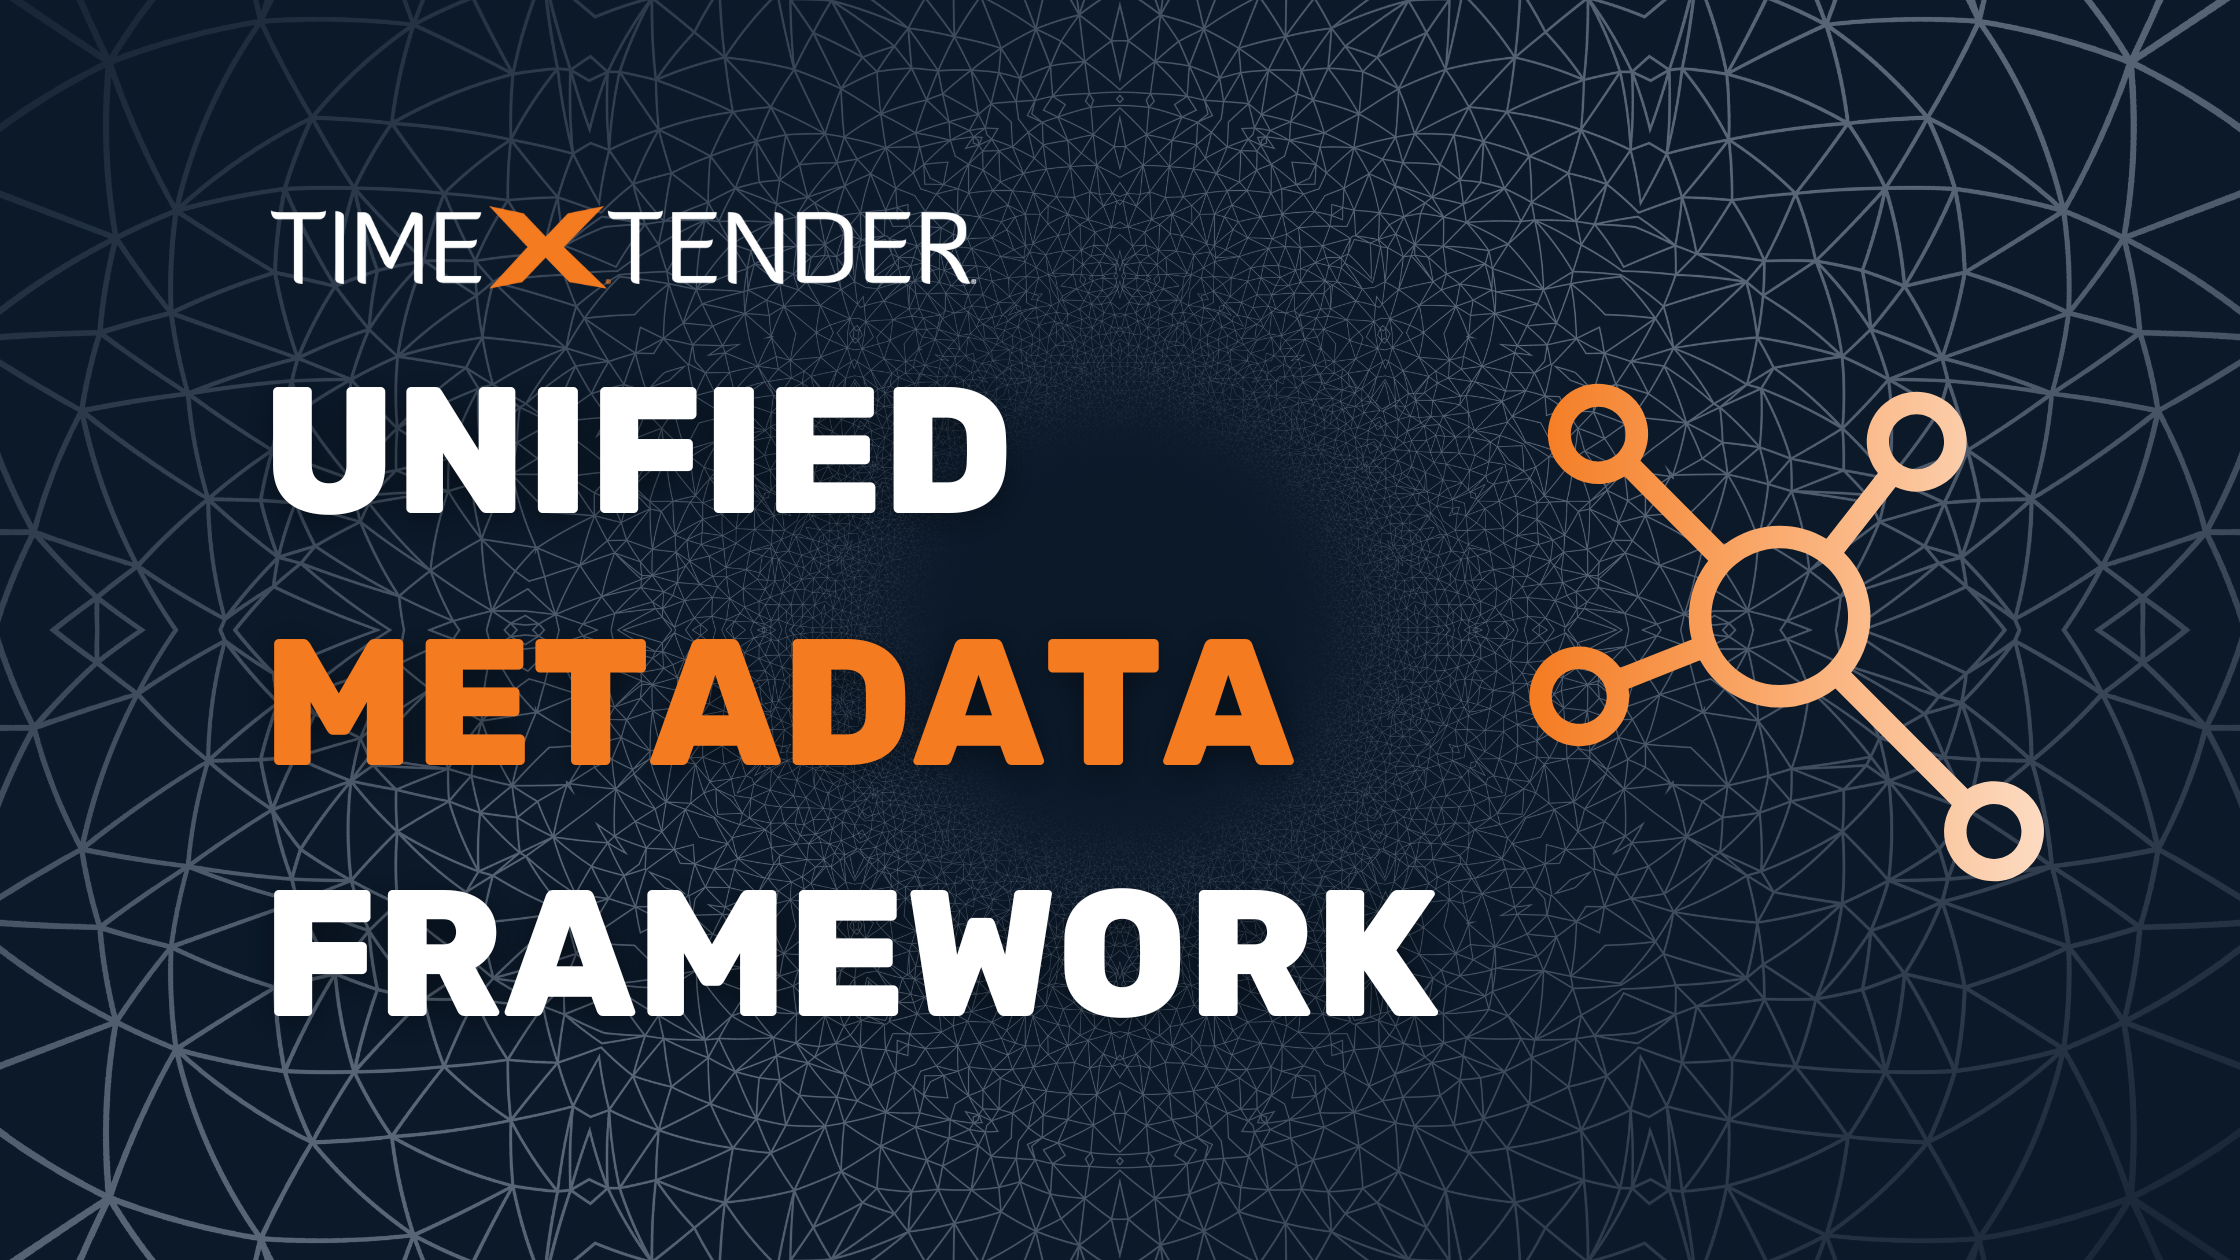 TimeXtender Unified Metadata Framework